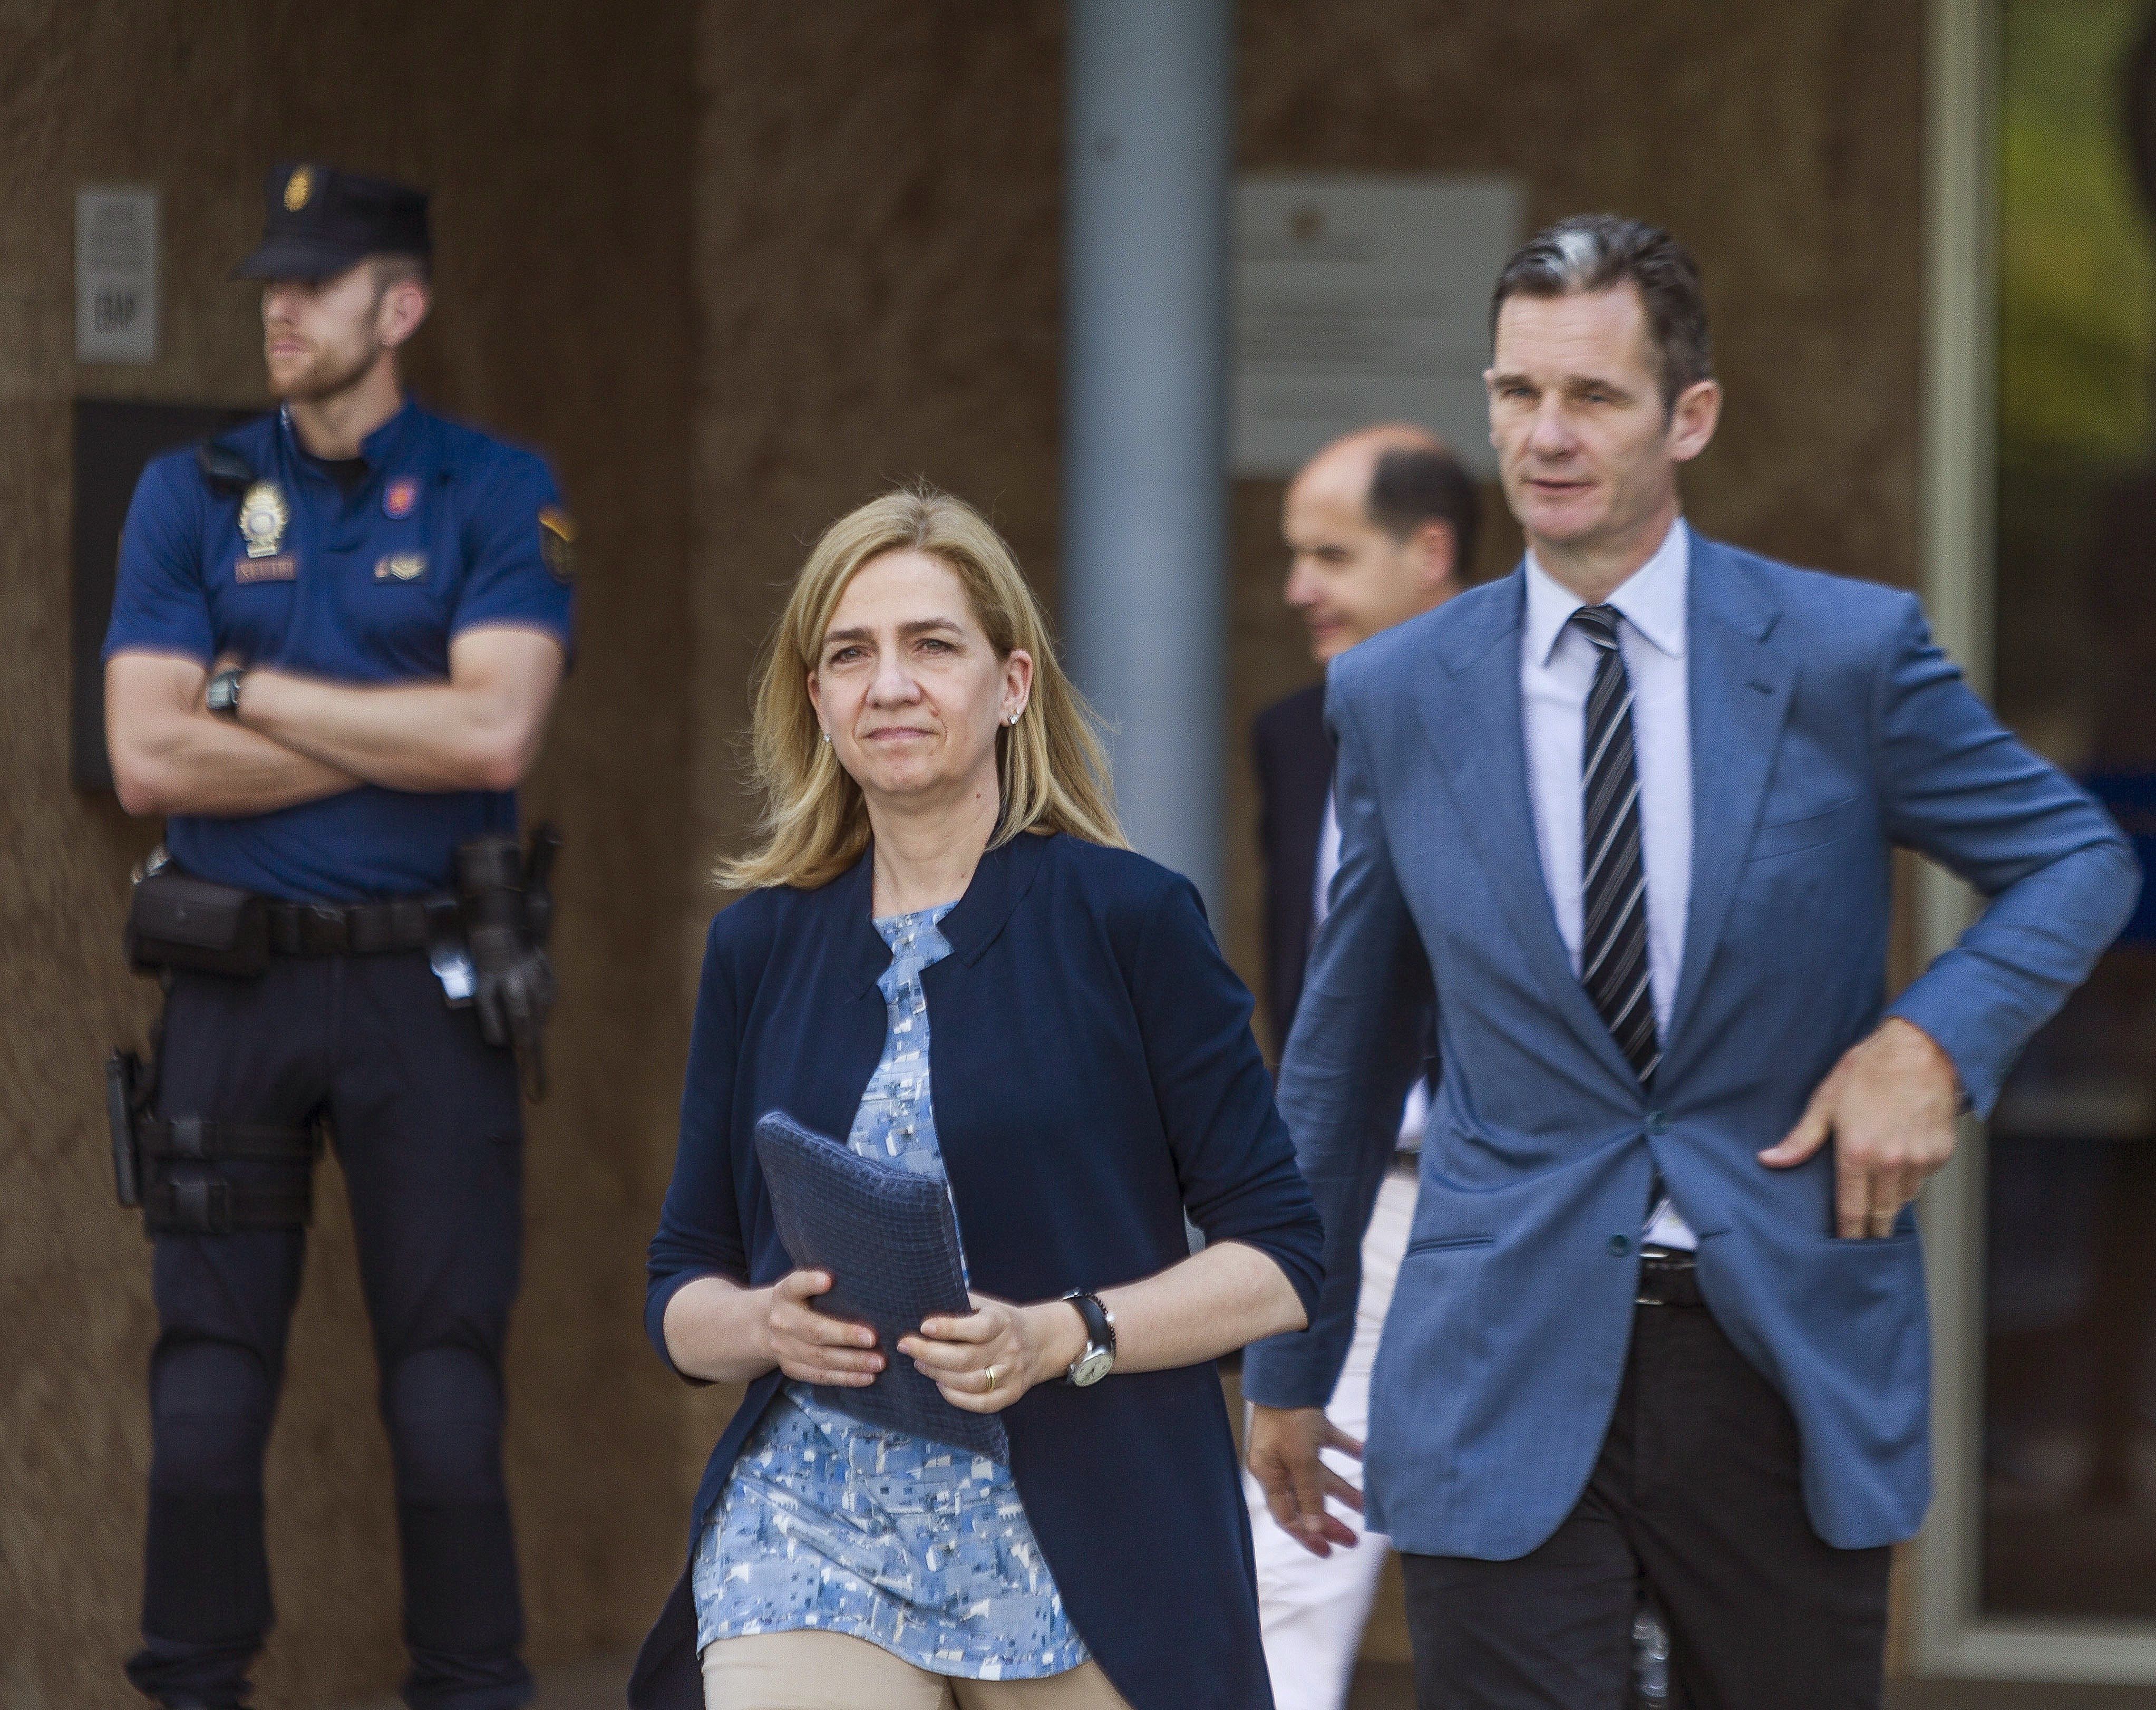 Multa para la Infanta y 6 años de cárcel para Urdangarin